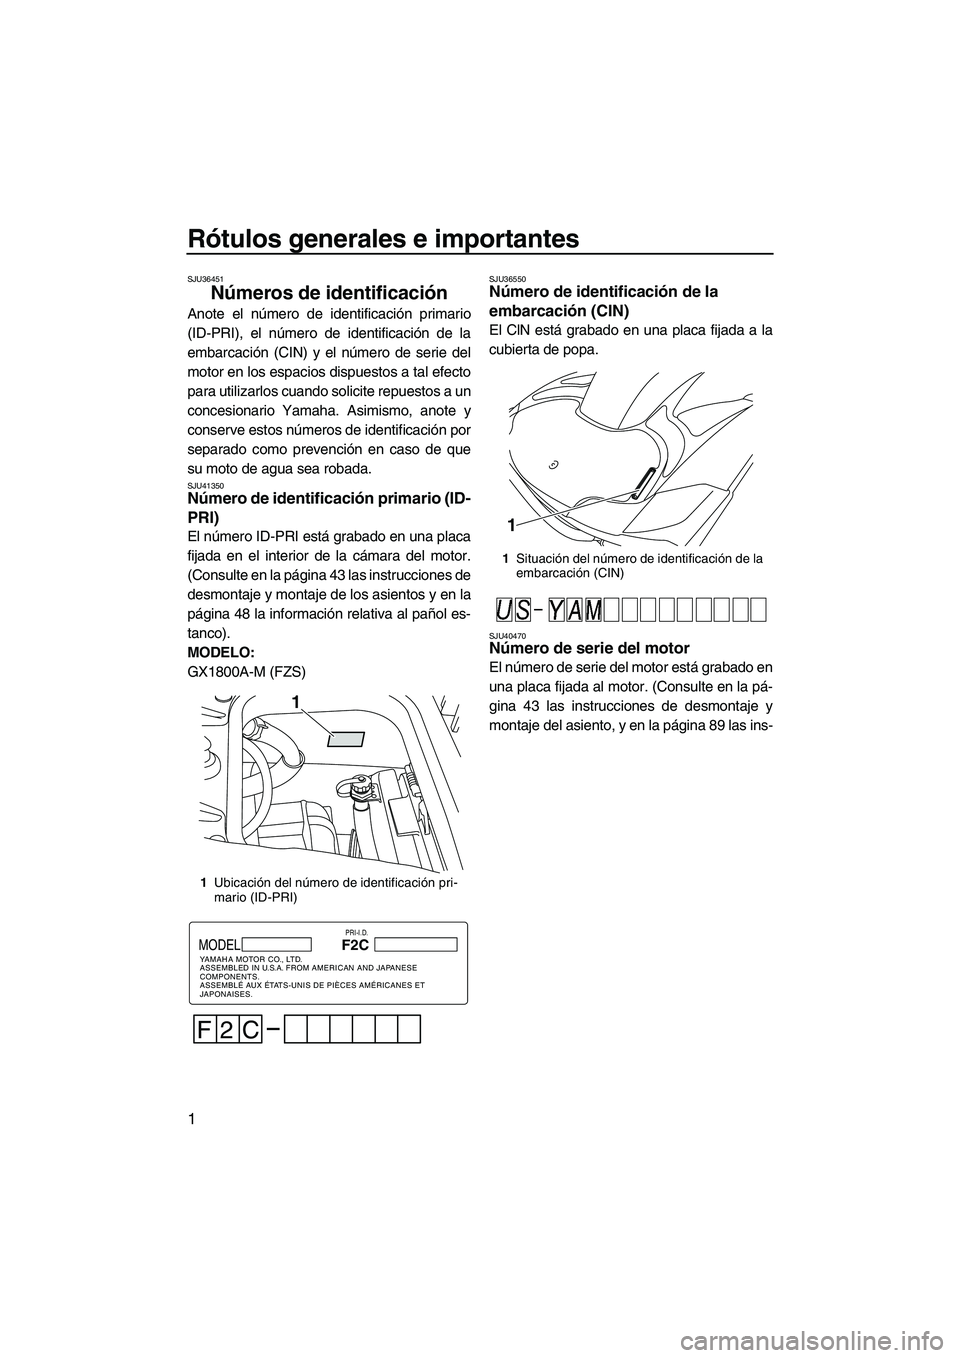 YAMAHA FZS 2013  Manuale de Empleo (in Spanish) Rótulos generales e importantes
1
SJU36451
Números de identificación 
Anote el número de identificación primario
(ID-PRI), el número de identificación de la
embarcación (CIN) y el número de s